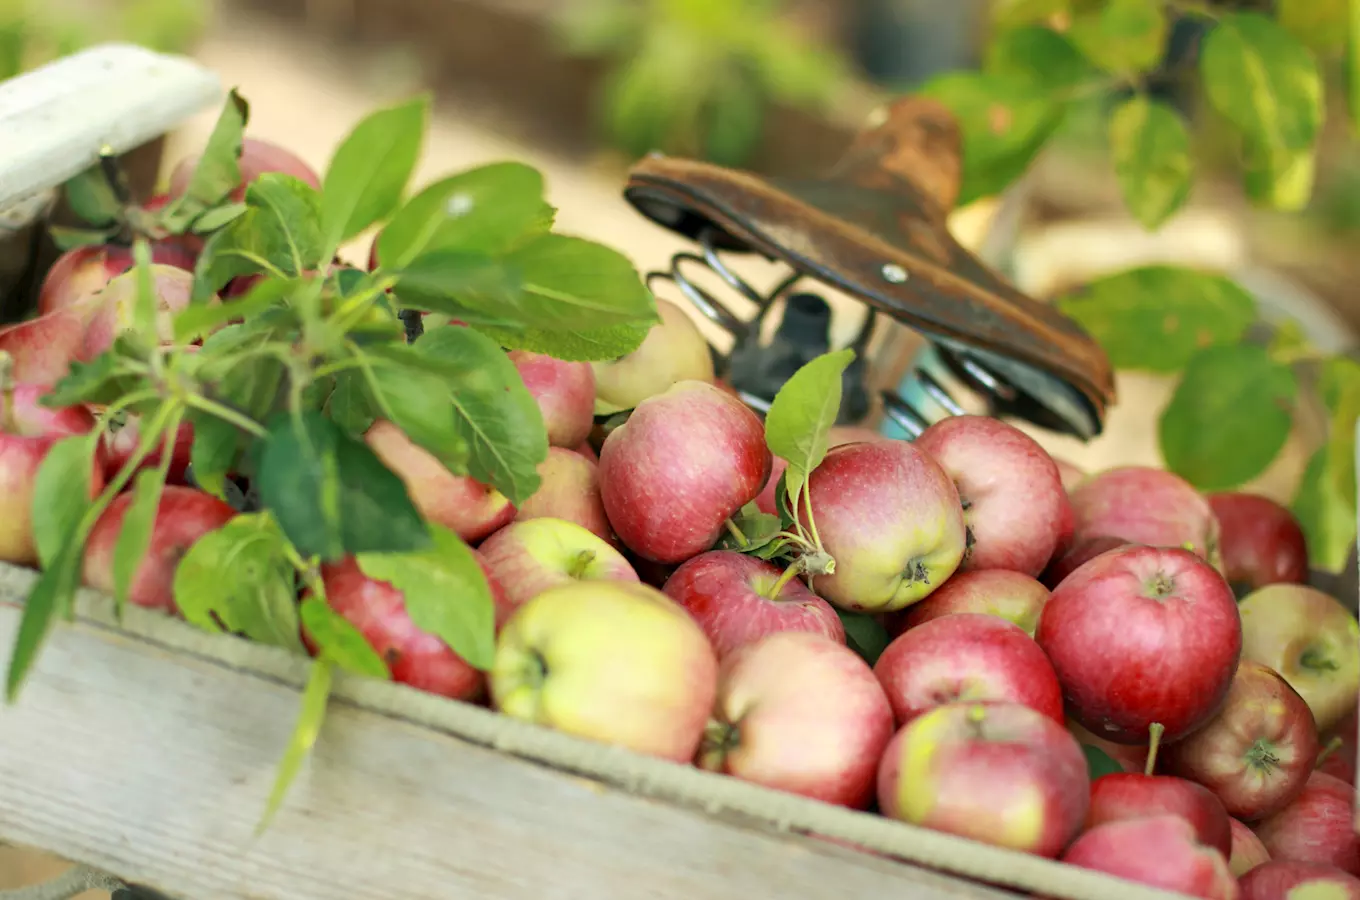 Jablečné slavnosti na farmářském tržišti představí na 50 odrůd jablek